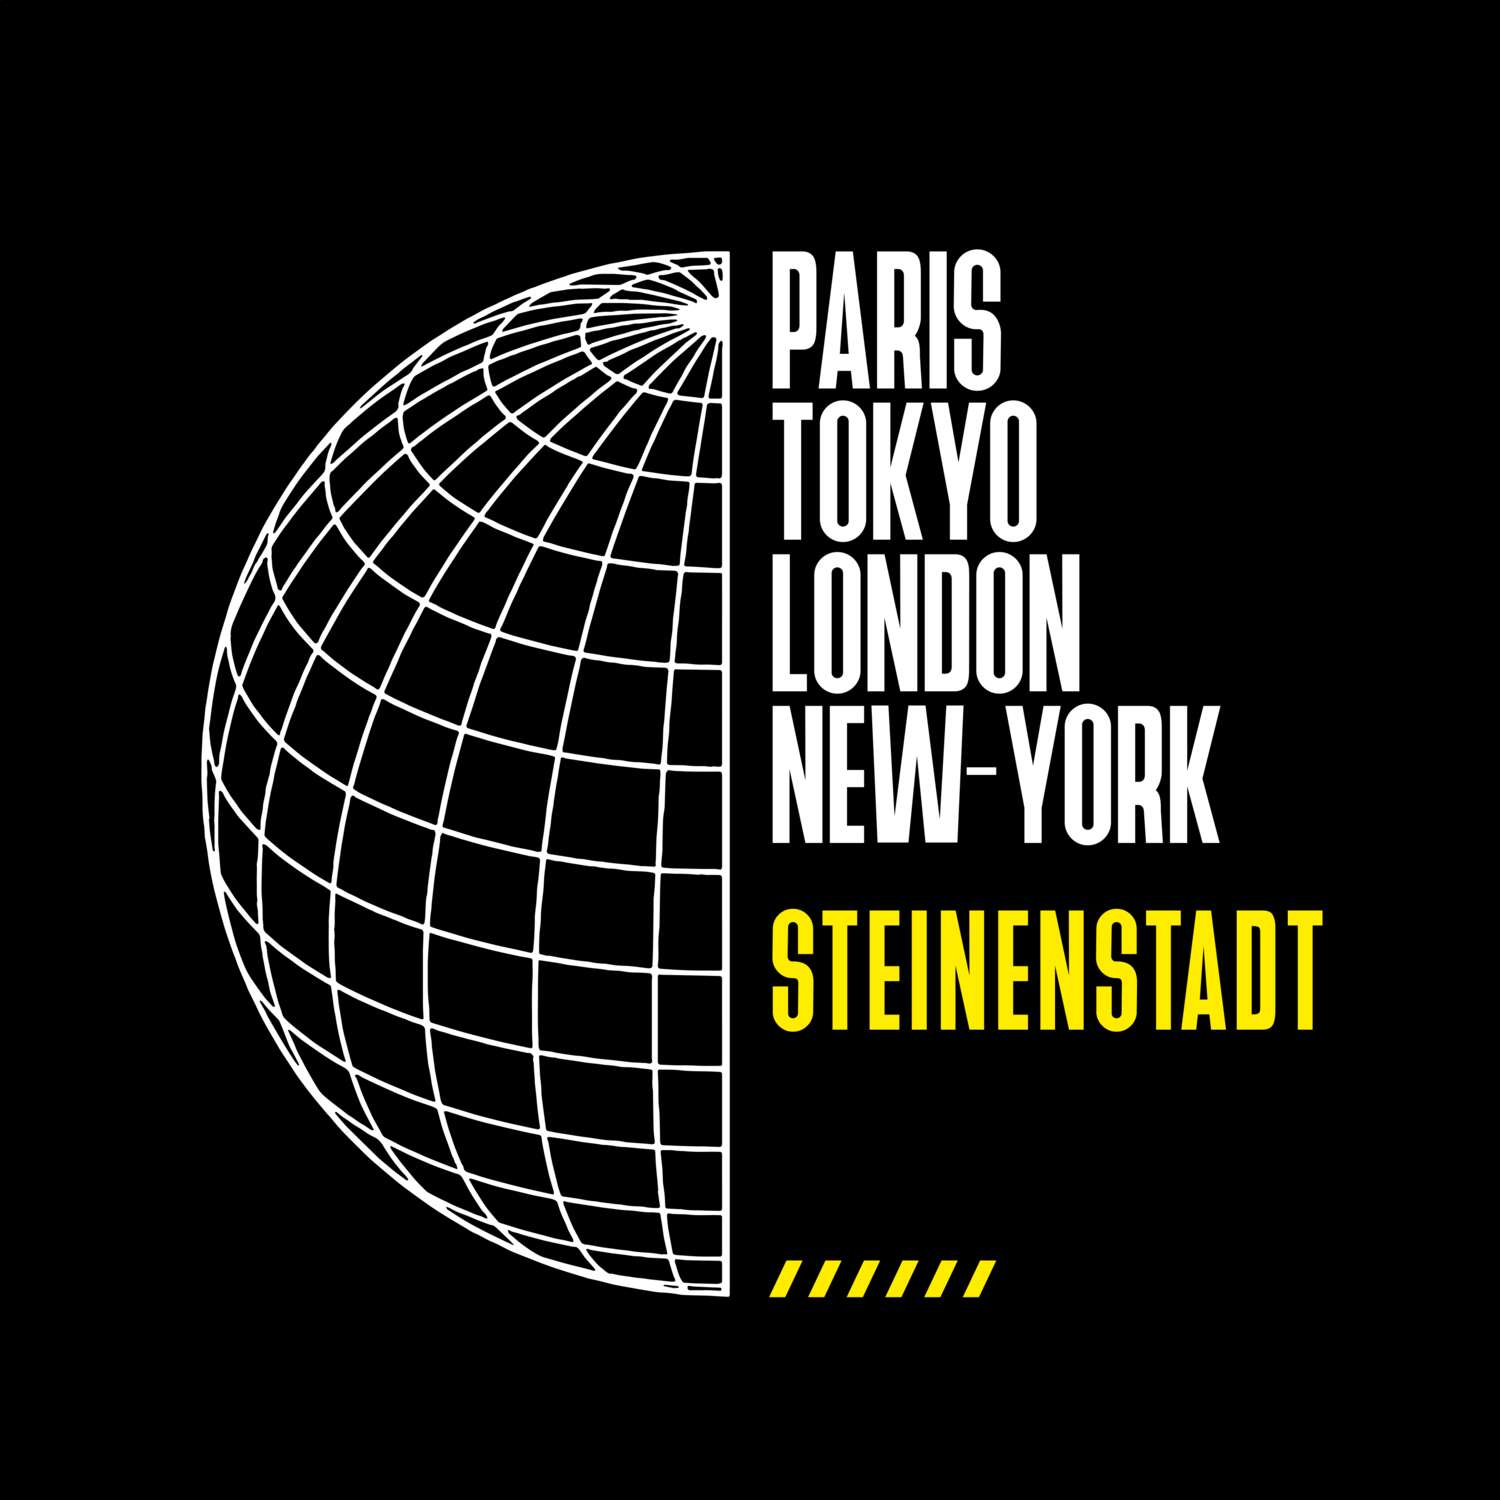 Steinenstadt T-Shirt »Paris Tokyo London«